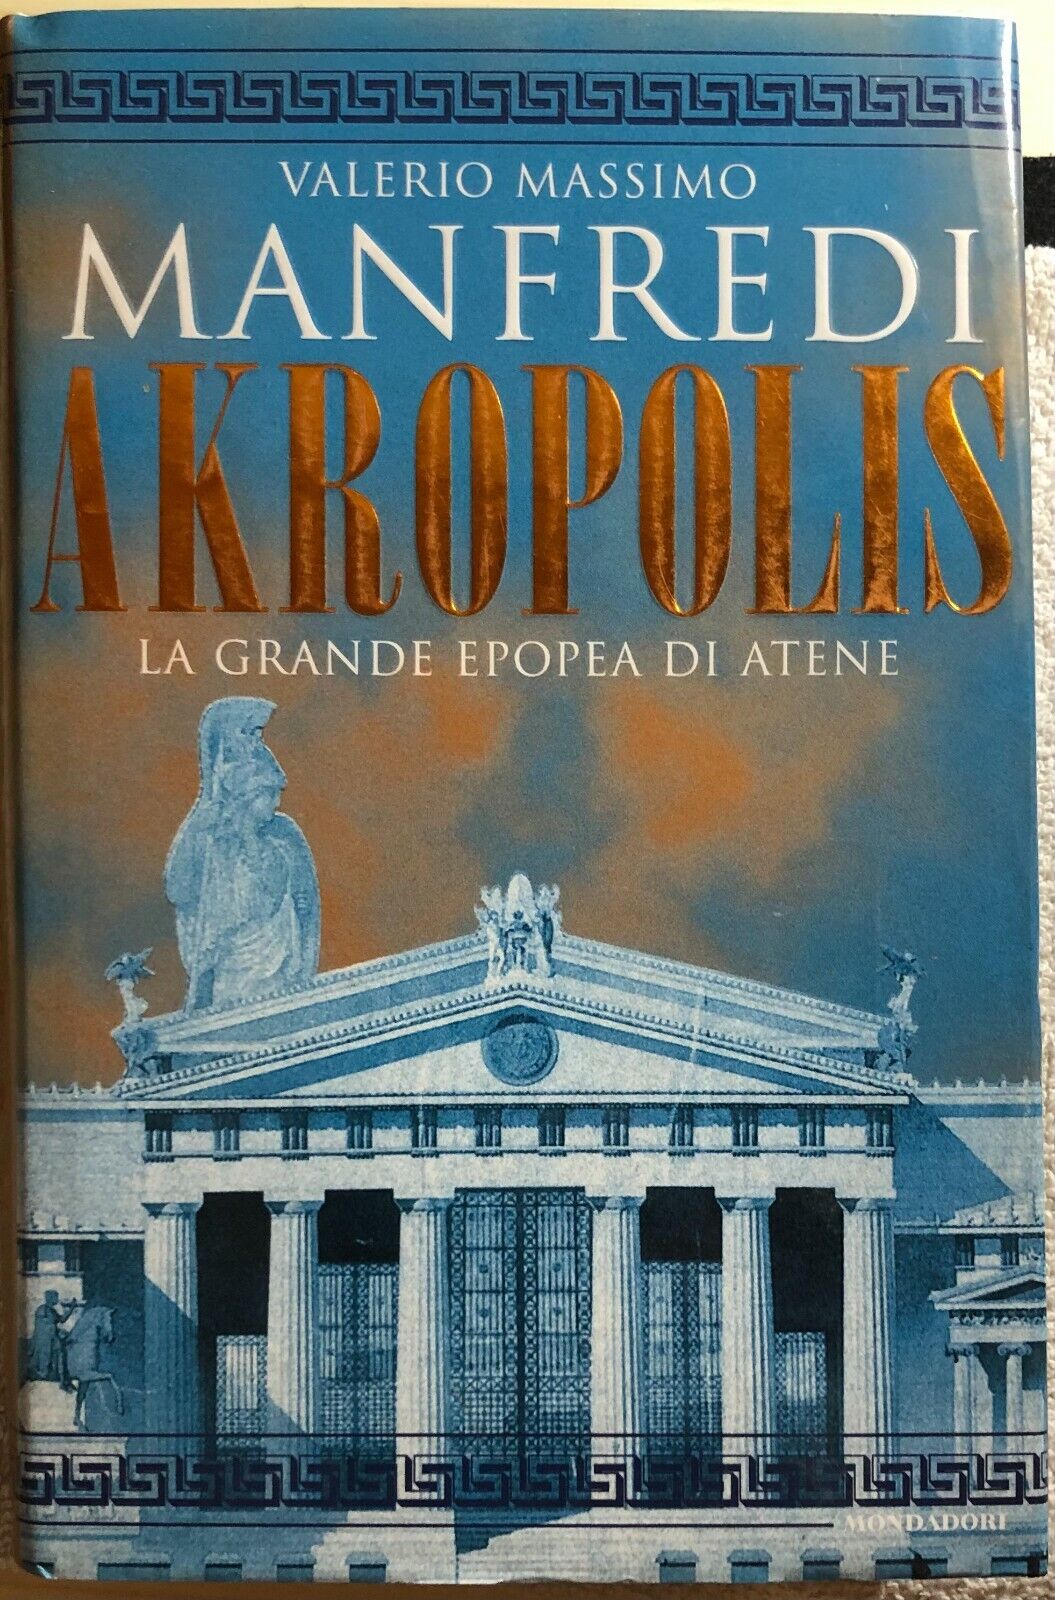 Akropolis la grande epopea di Atene di Valerio Manfredi,  2000,  Mondadori libro usato